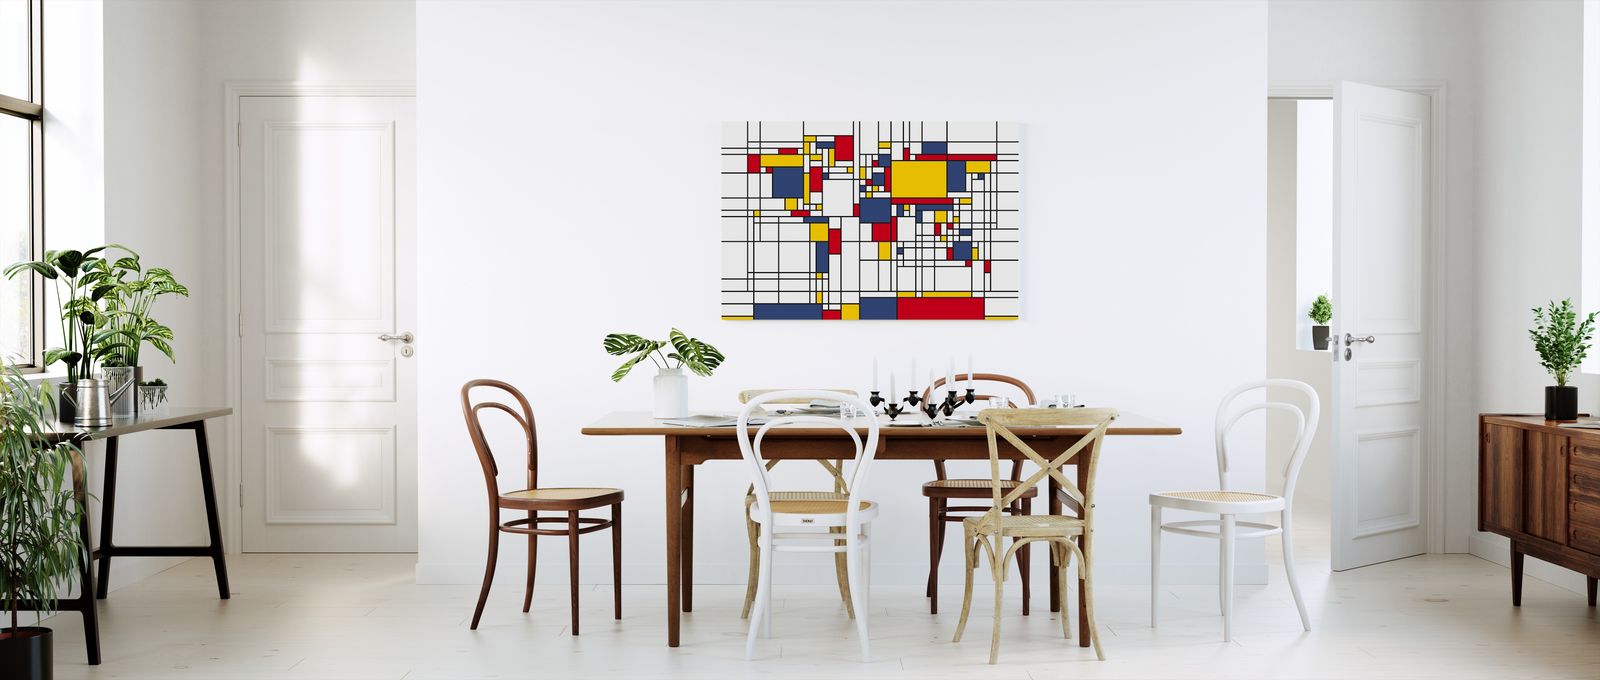 アートパネル Photowall Piet Mondrian Style World Map E 壁紙屋本舗